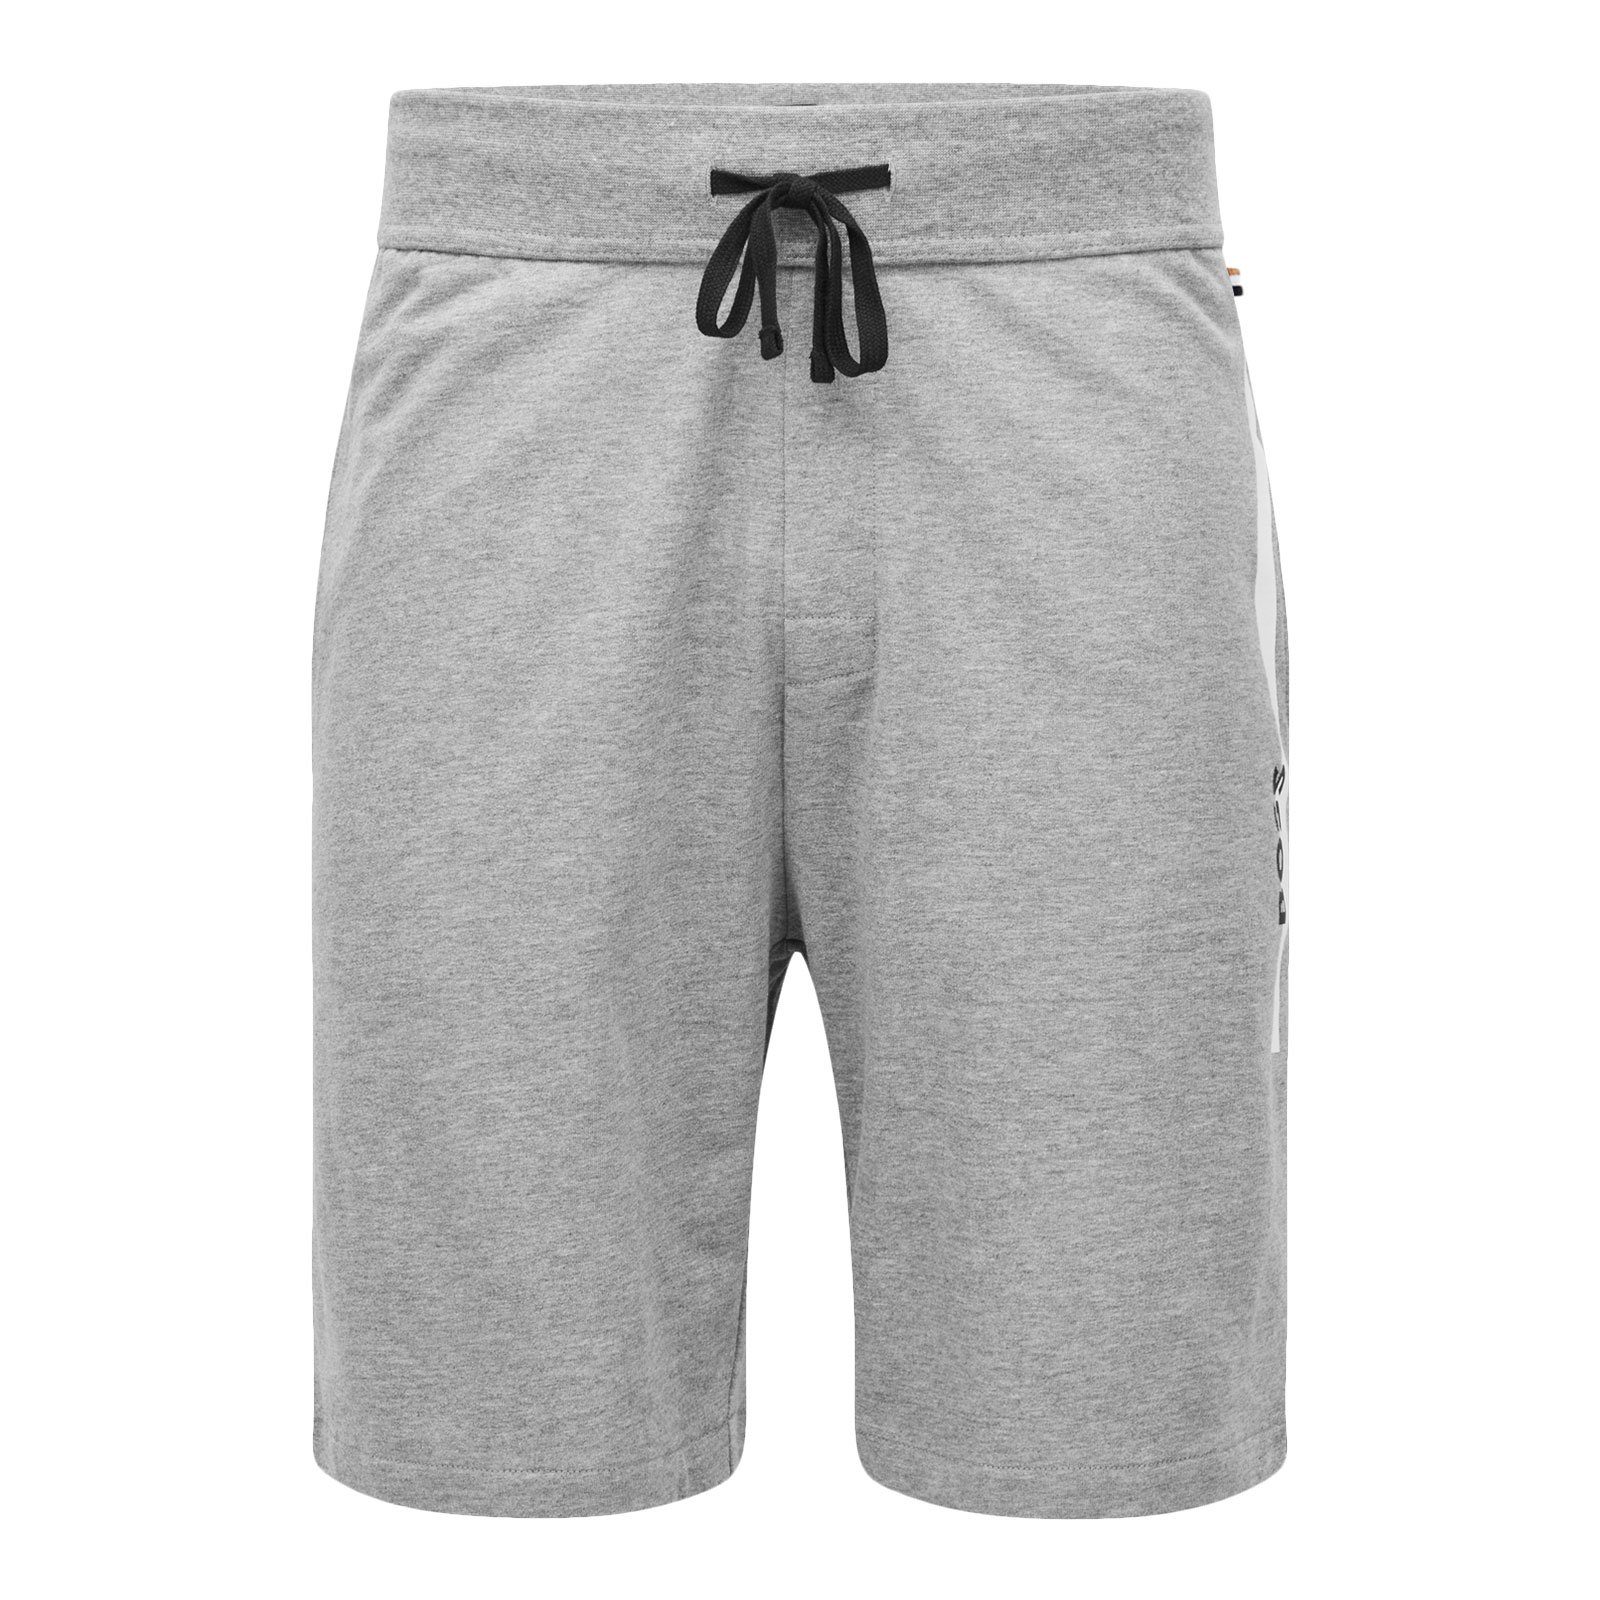 Shorts Shorts medium kontrastfarbenen Authentic Streifen grey 033 BOSS mit